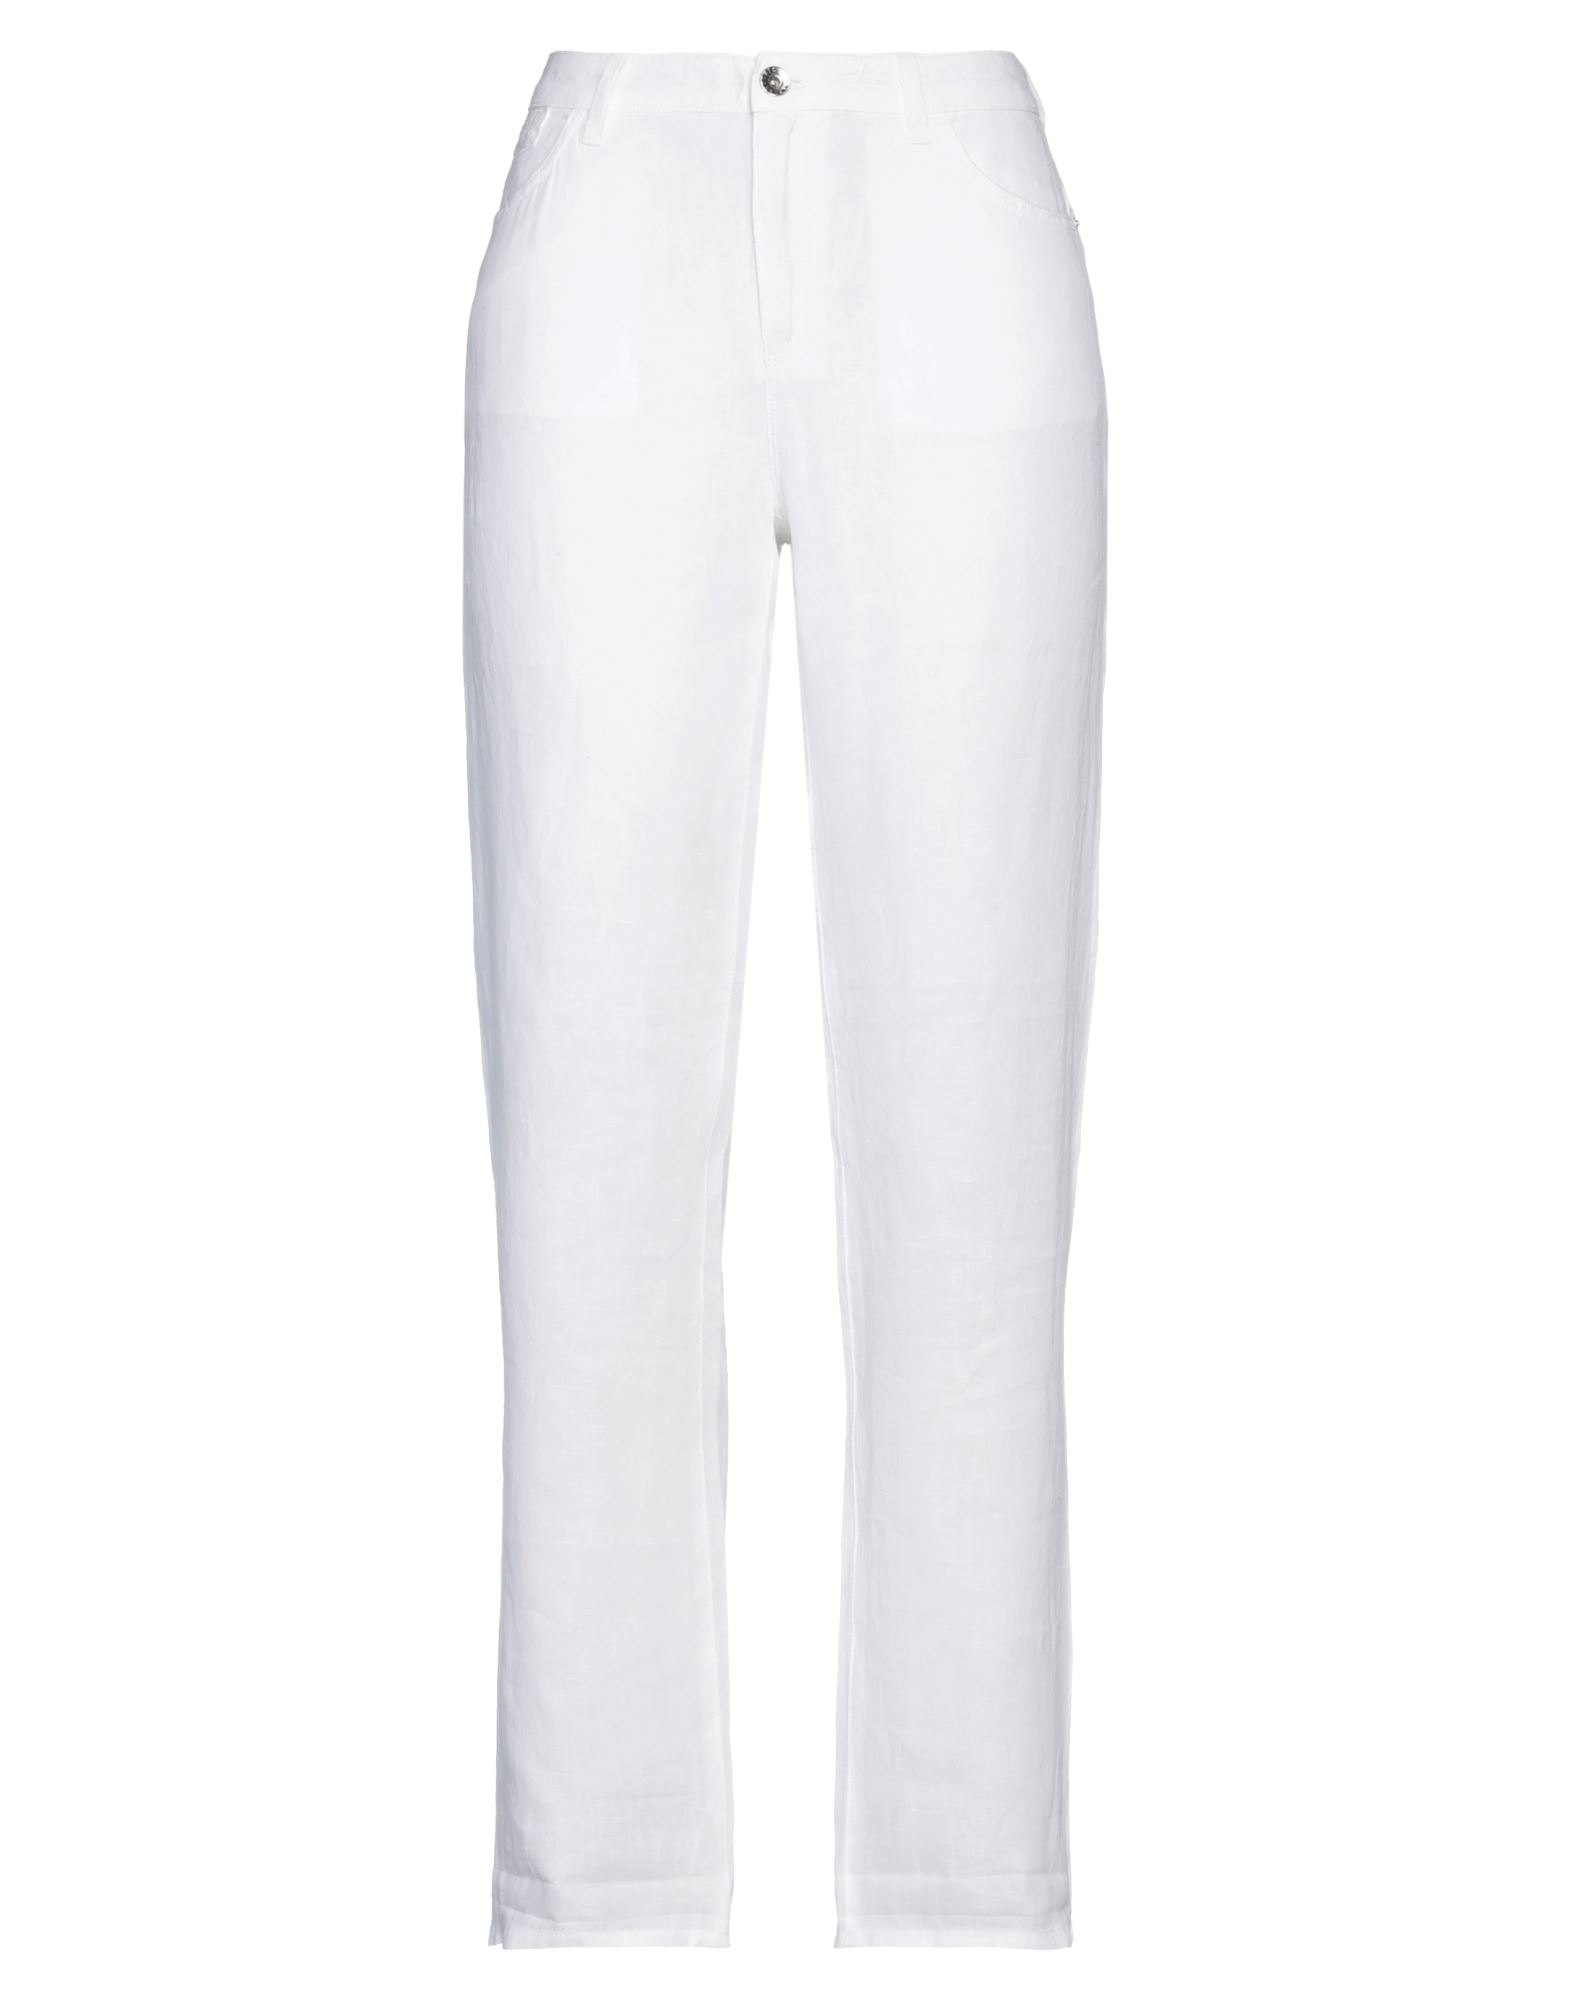 Emporio Armani Woman Pants White Size 32 Linen